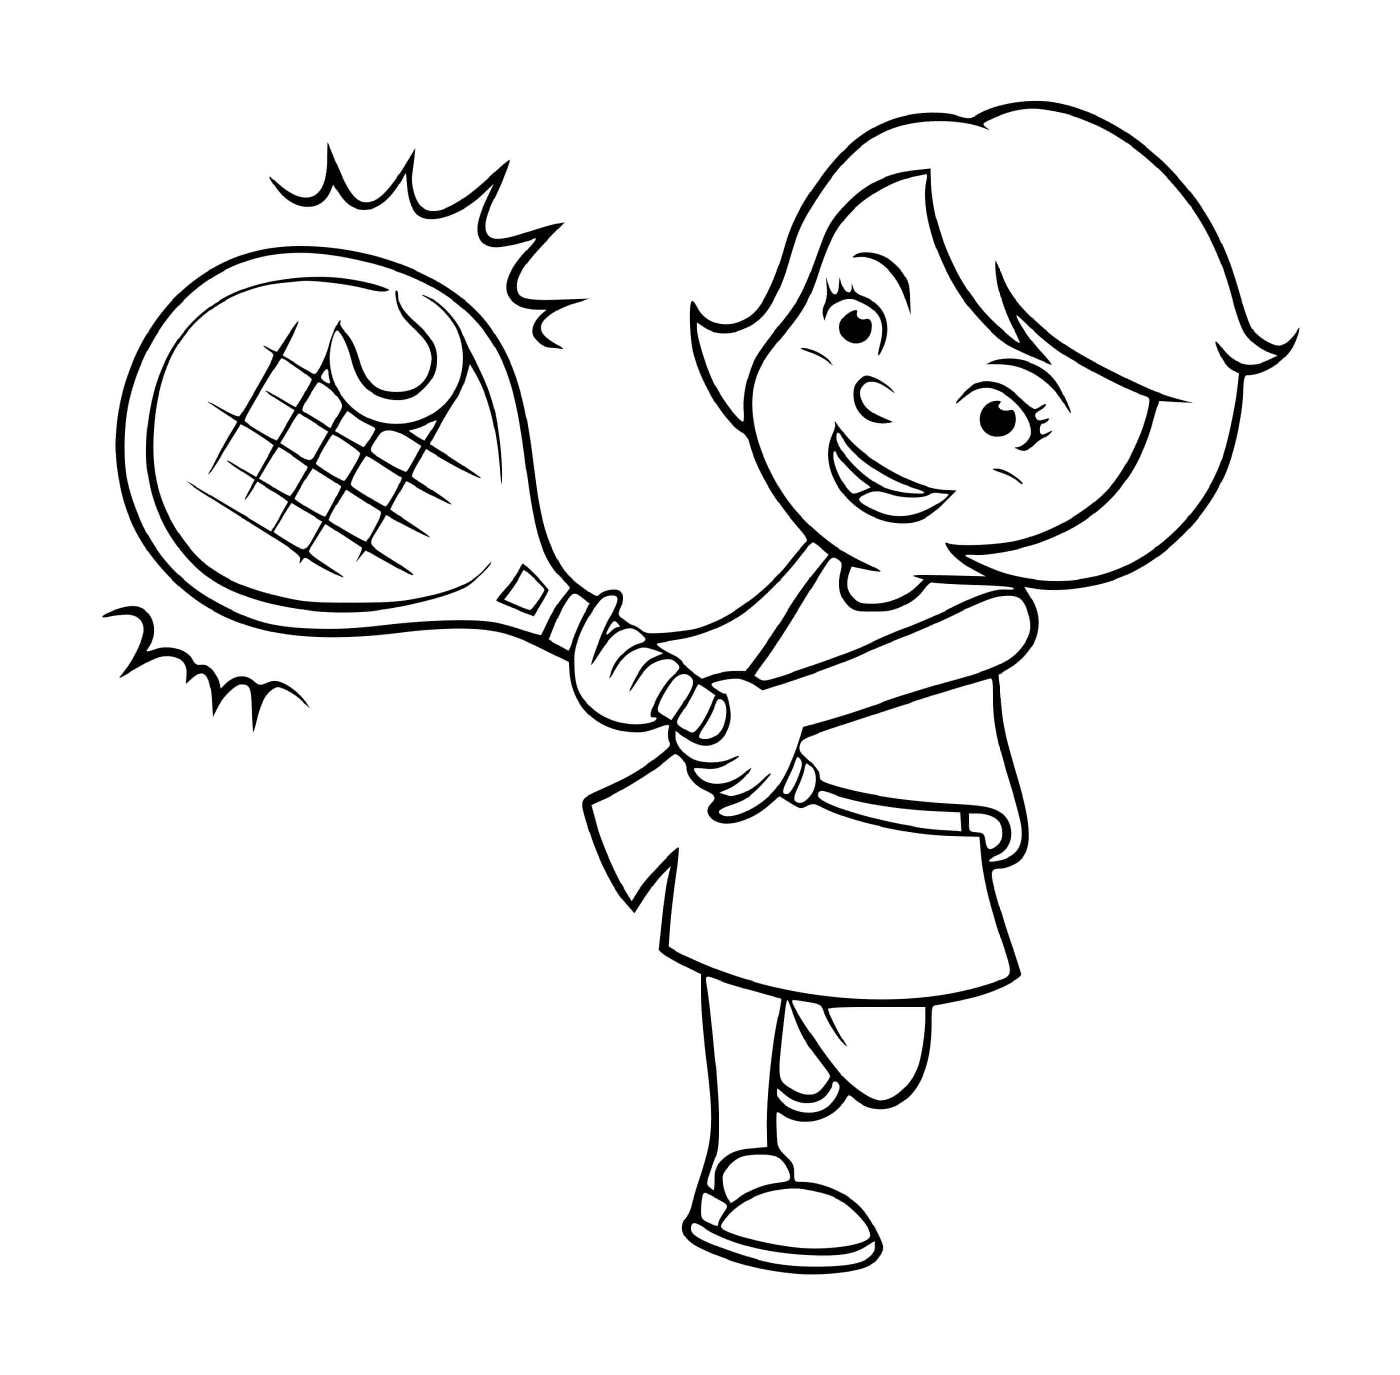  Uma menina joga tênis com paixão 